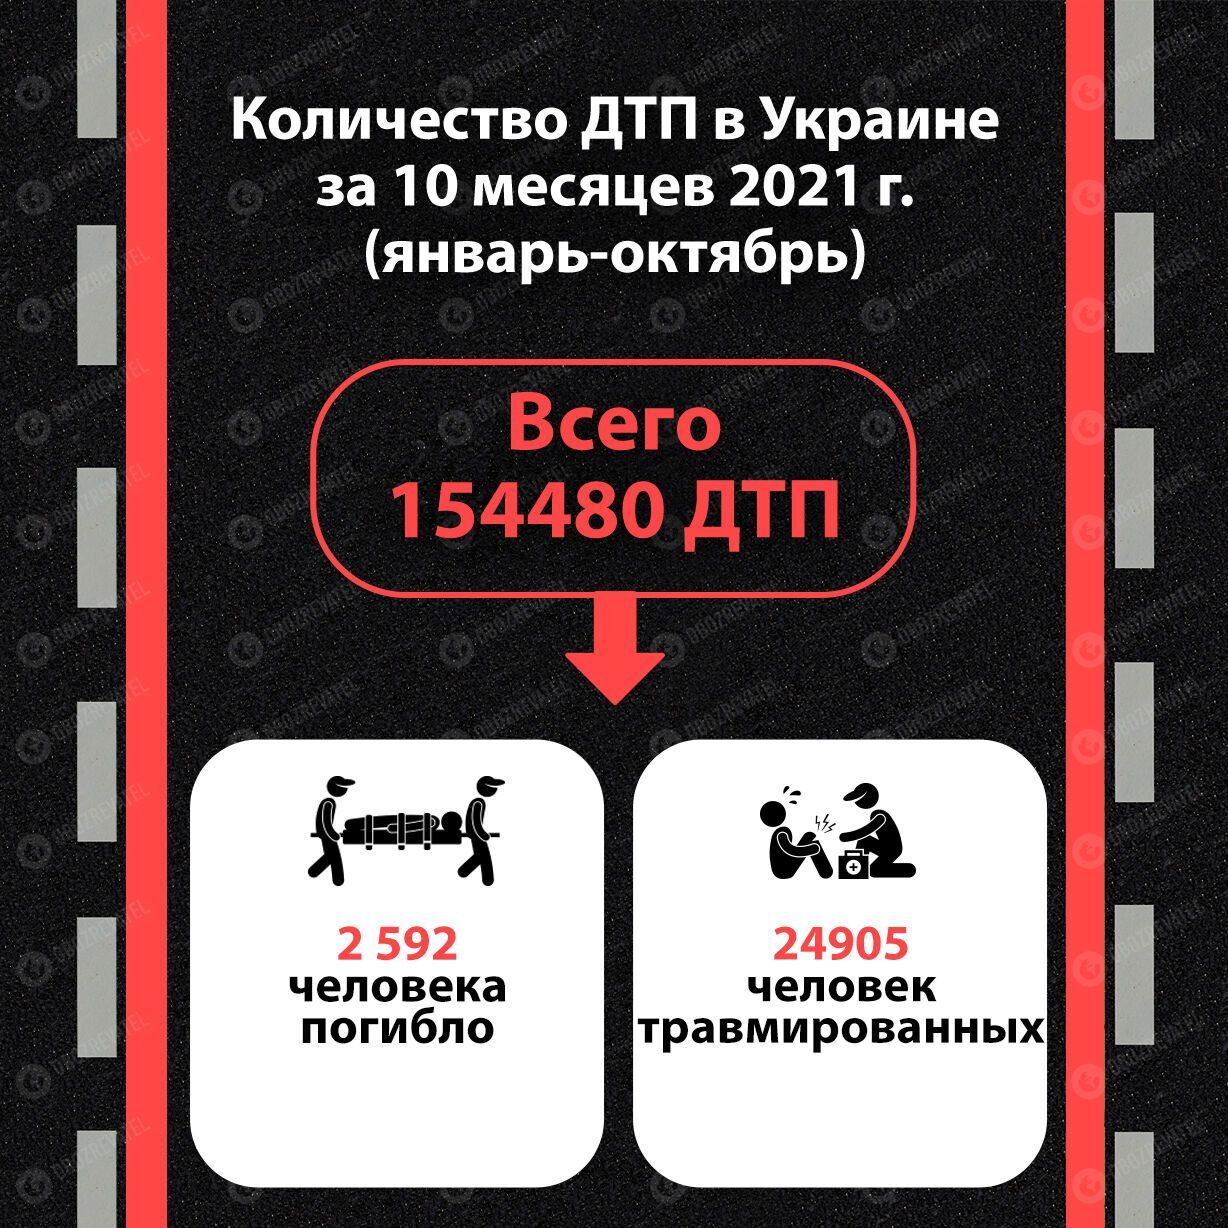 Кількість ДТП в Україні